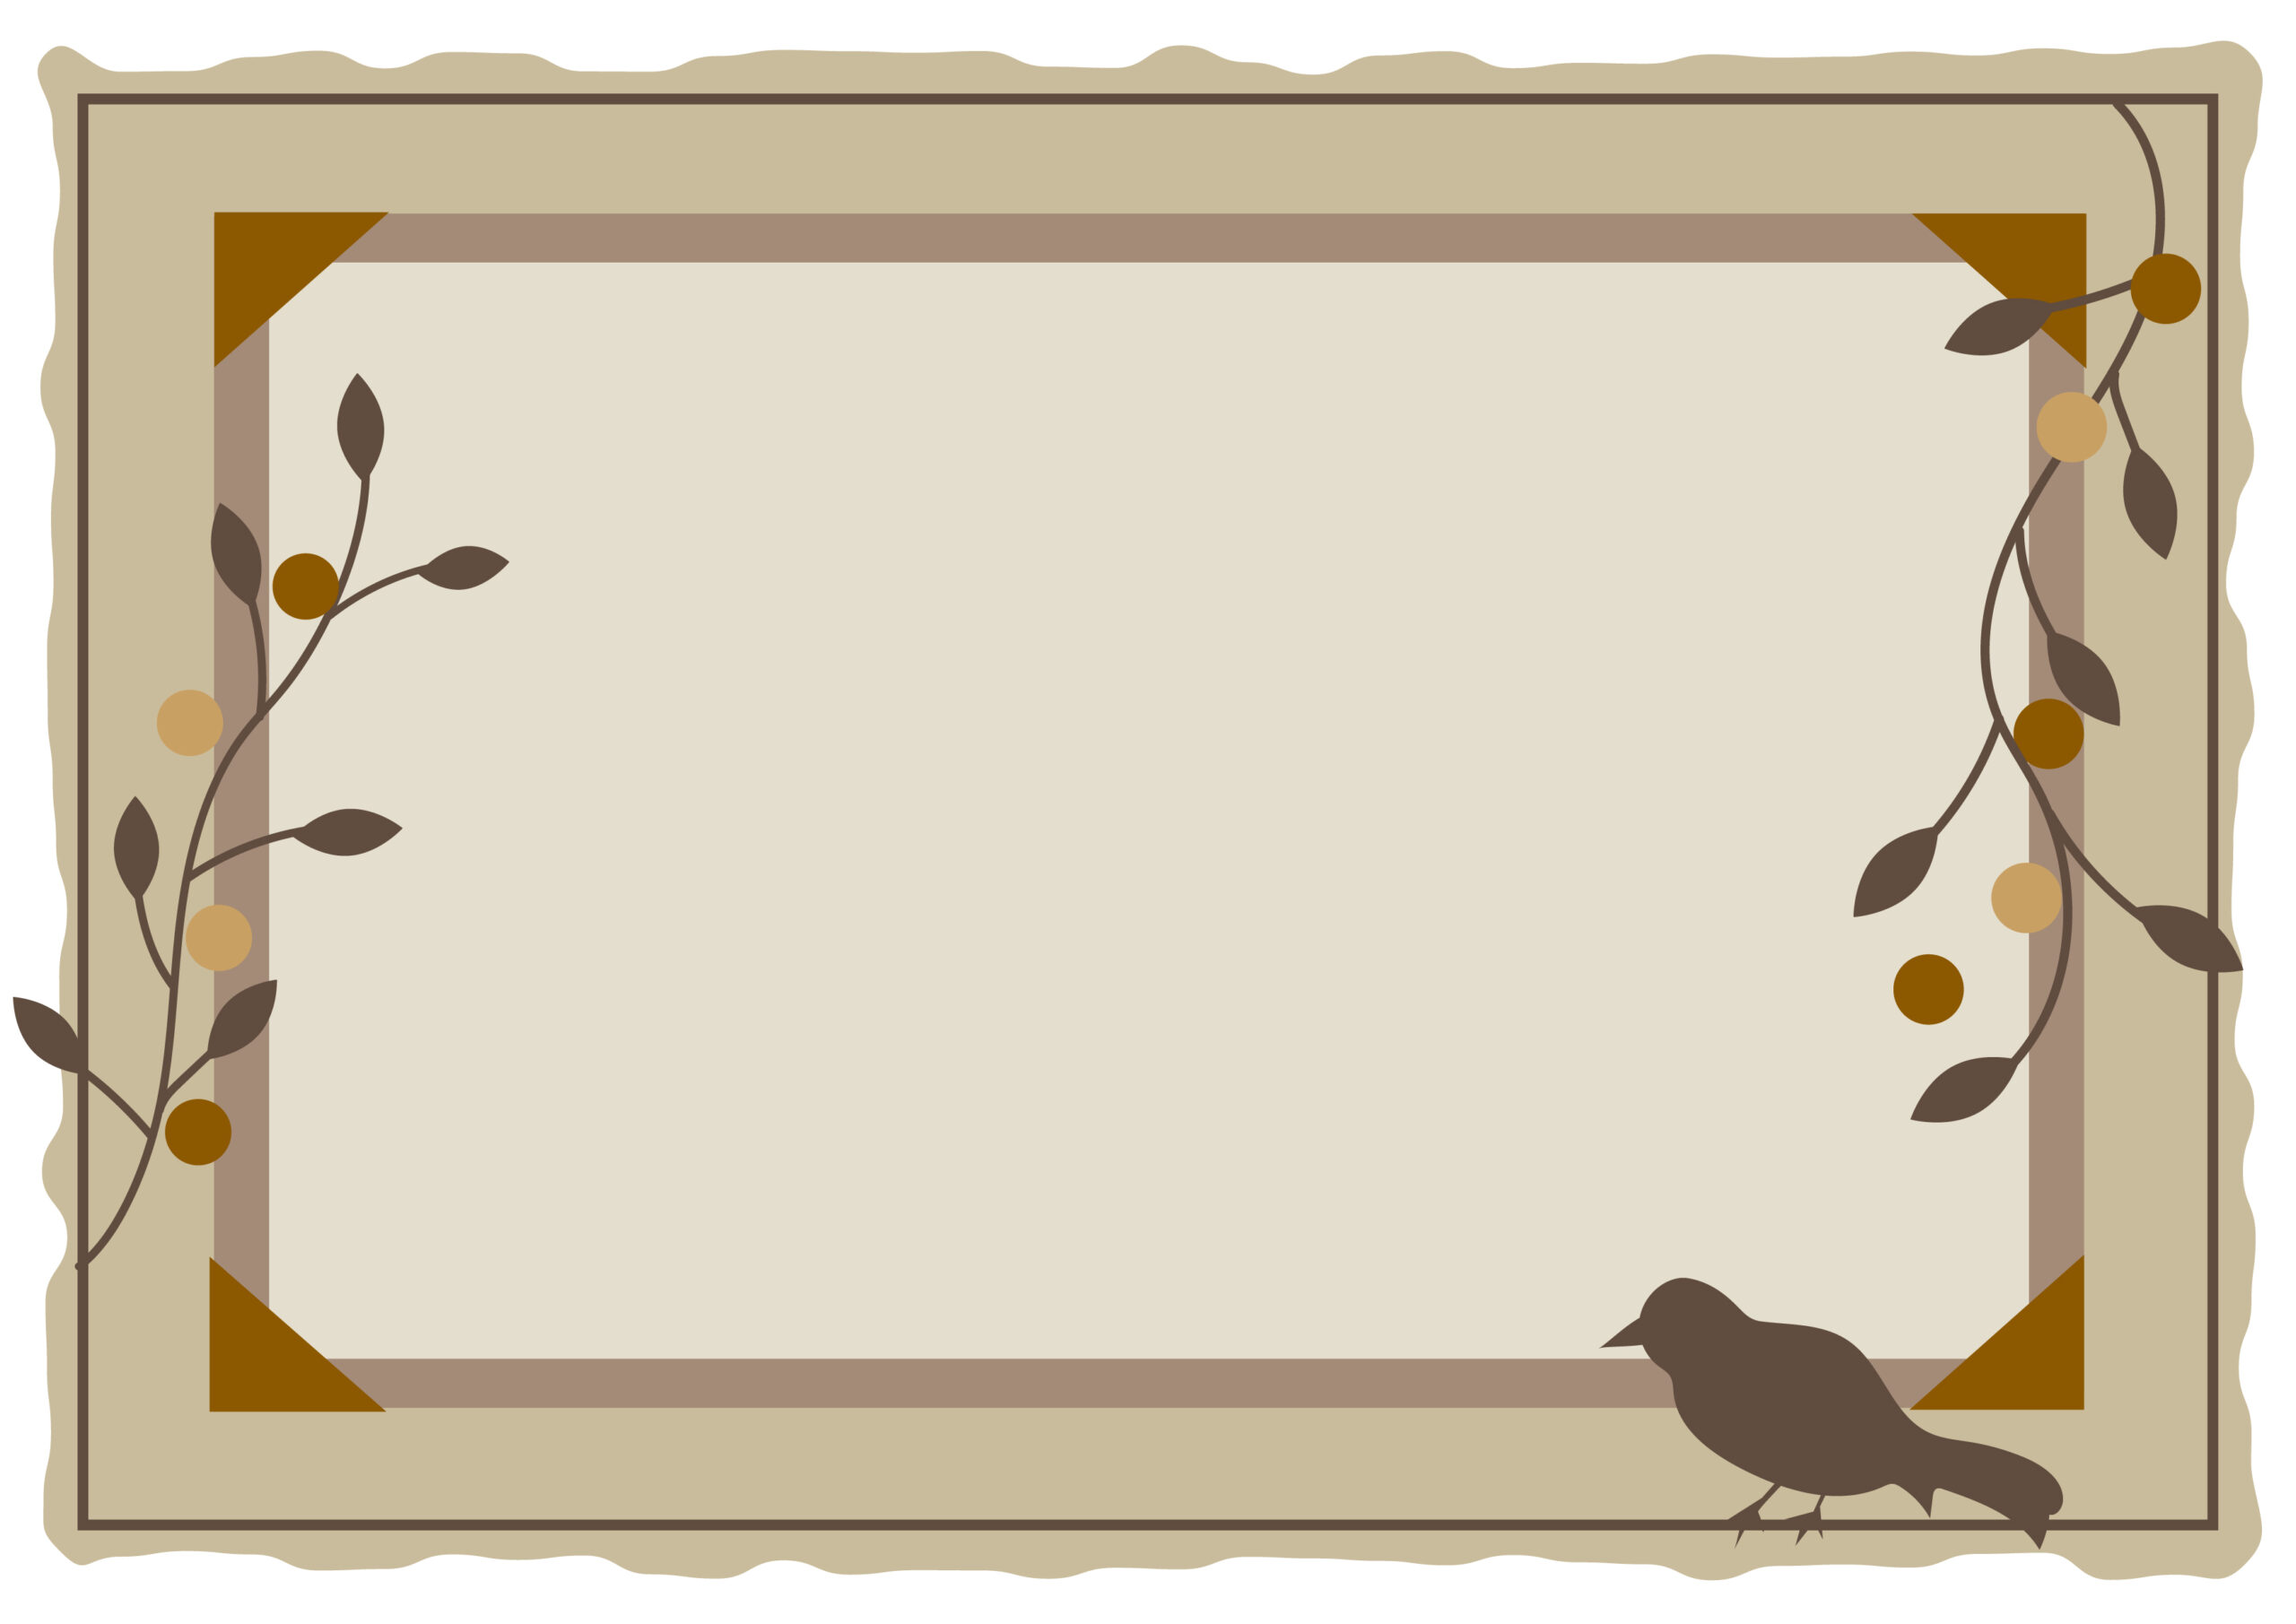 秋に行う敬老会の案内状や招待状のハガキ、施設内のお知らせの張り紙にご活用いただける落ち着いたデザインのかわいいフレーム素材になります。鳥や植物が飾り枠に描かれており、手書きやパソコンで文字の記載が可能です。ダウンロード：JPGA